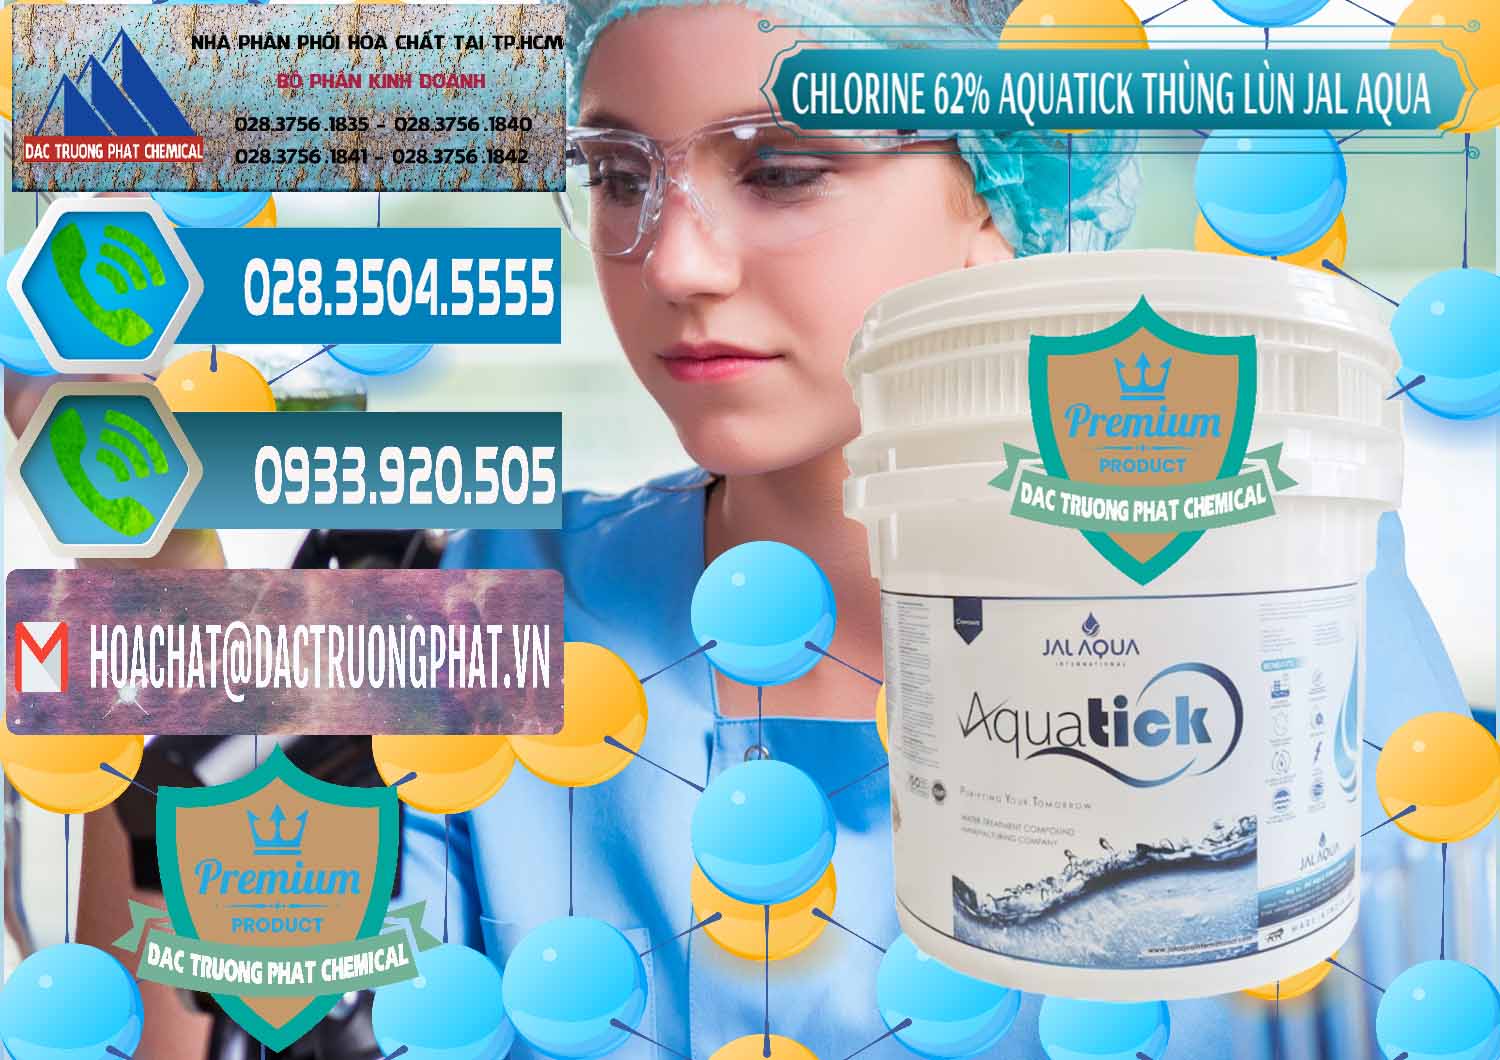 Cty chuyên cung cấp ( bán ) Chlorine – Clorin 62% Aquatick Thùng Lùn Jal Aqua Ấn Độ India - 0238 - Chuyên bán & phân phối hóa chất tại TP.HCM - congtyhoachat.net